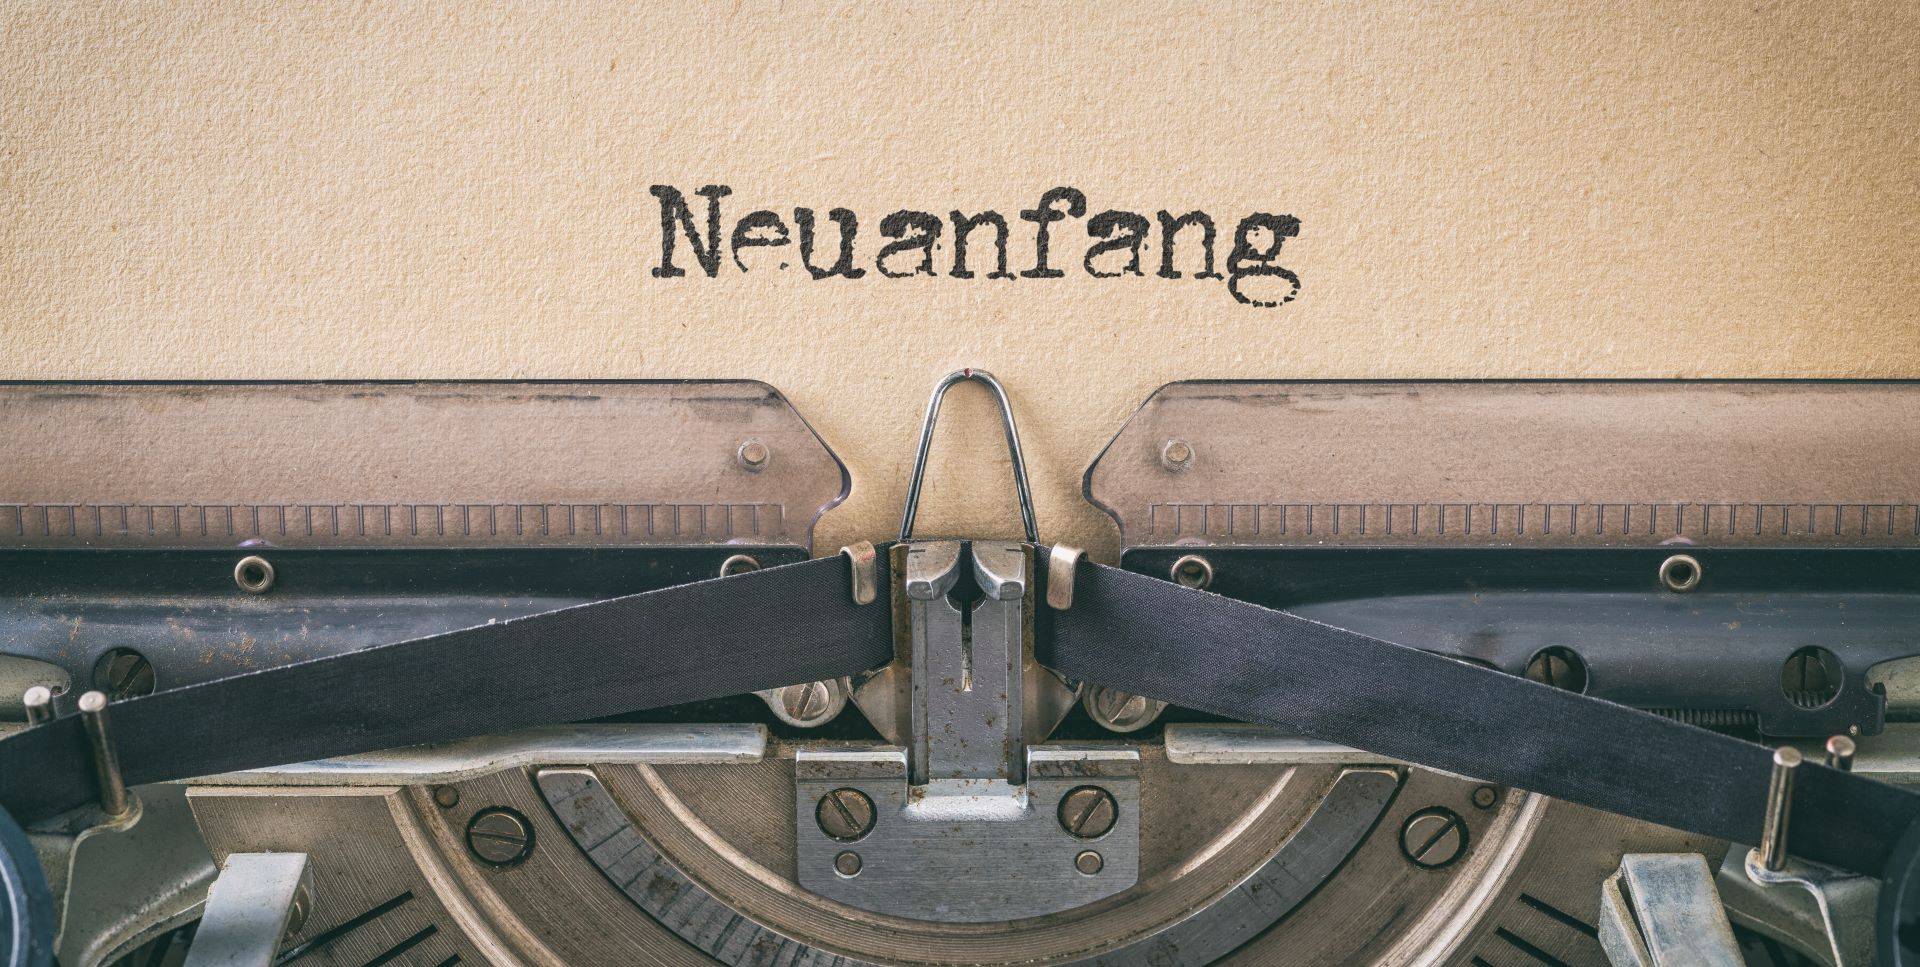 Alte Schreibmaschine schreibt "Neuanfang"